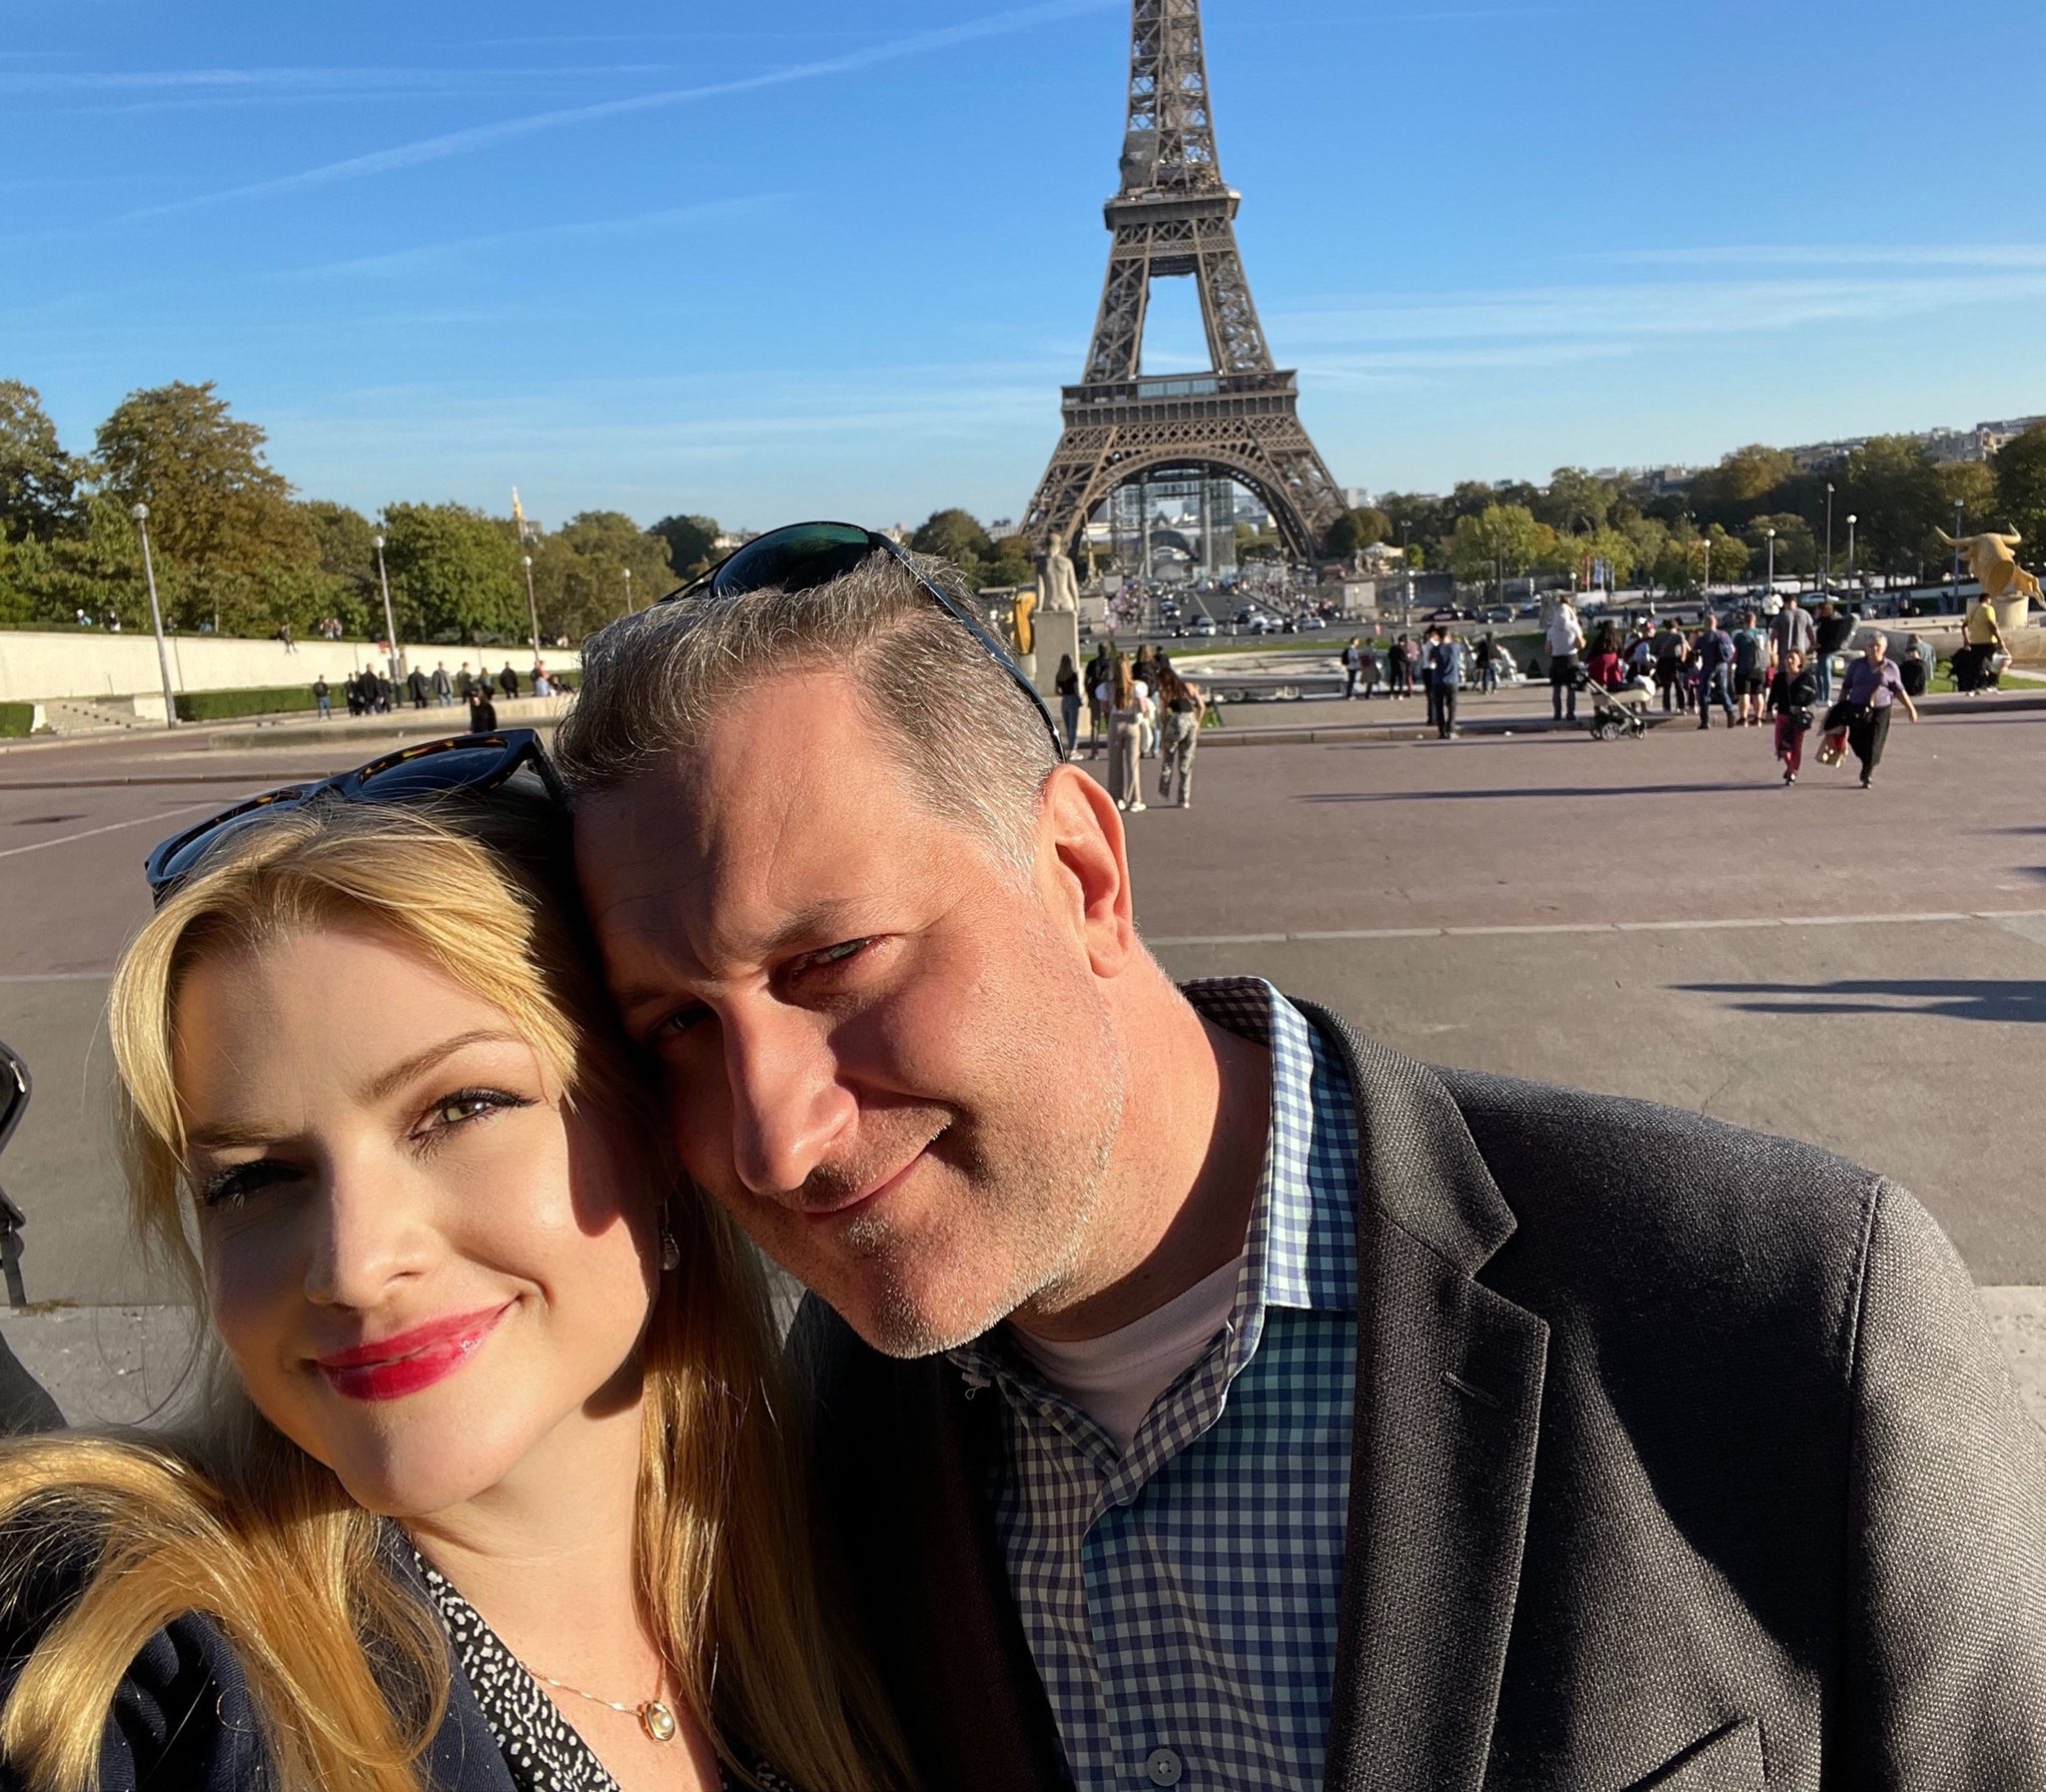 Selfies in the Trocadero